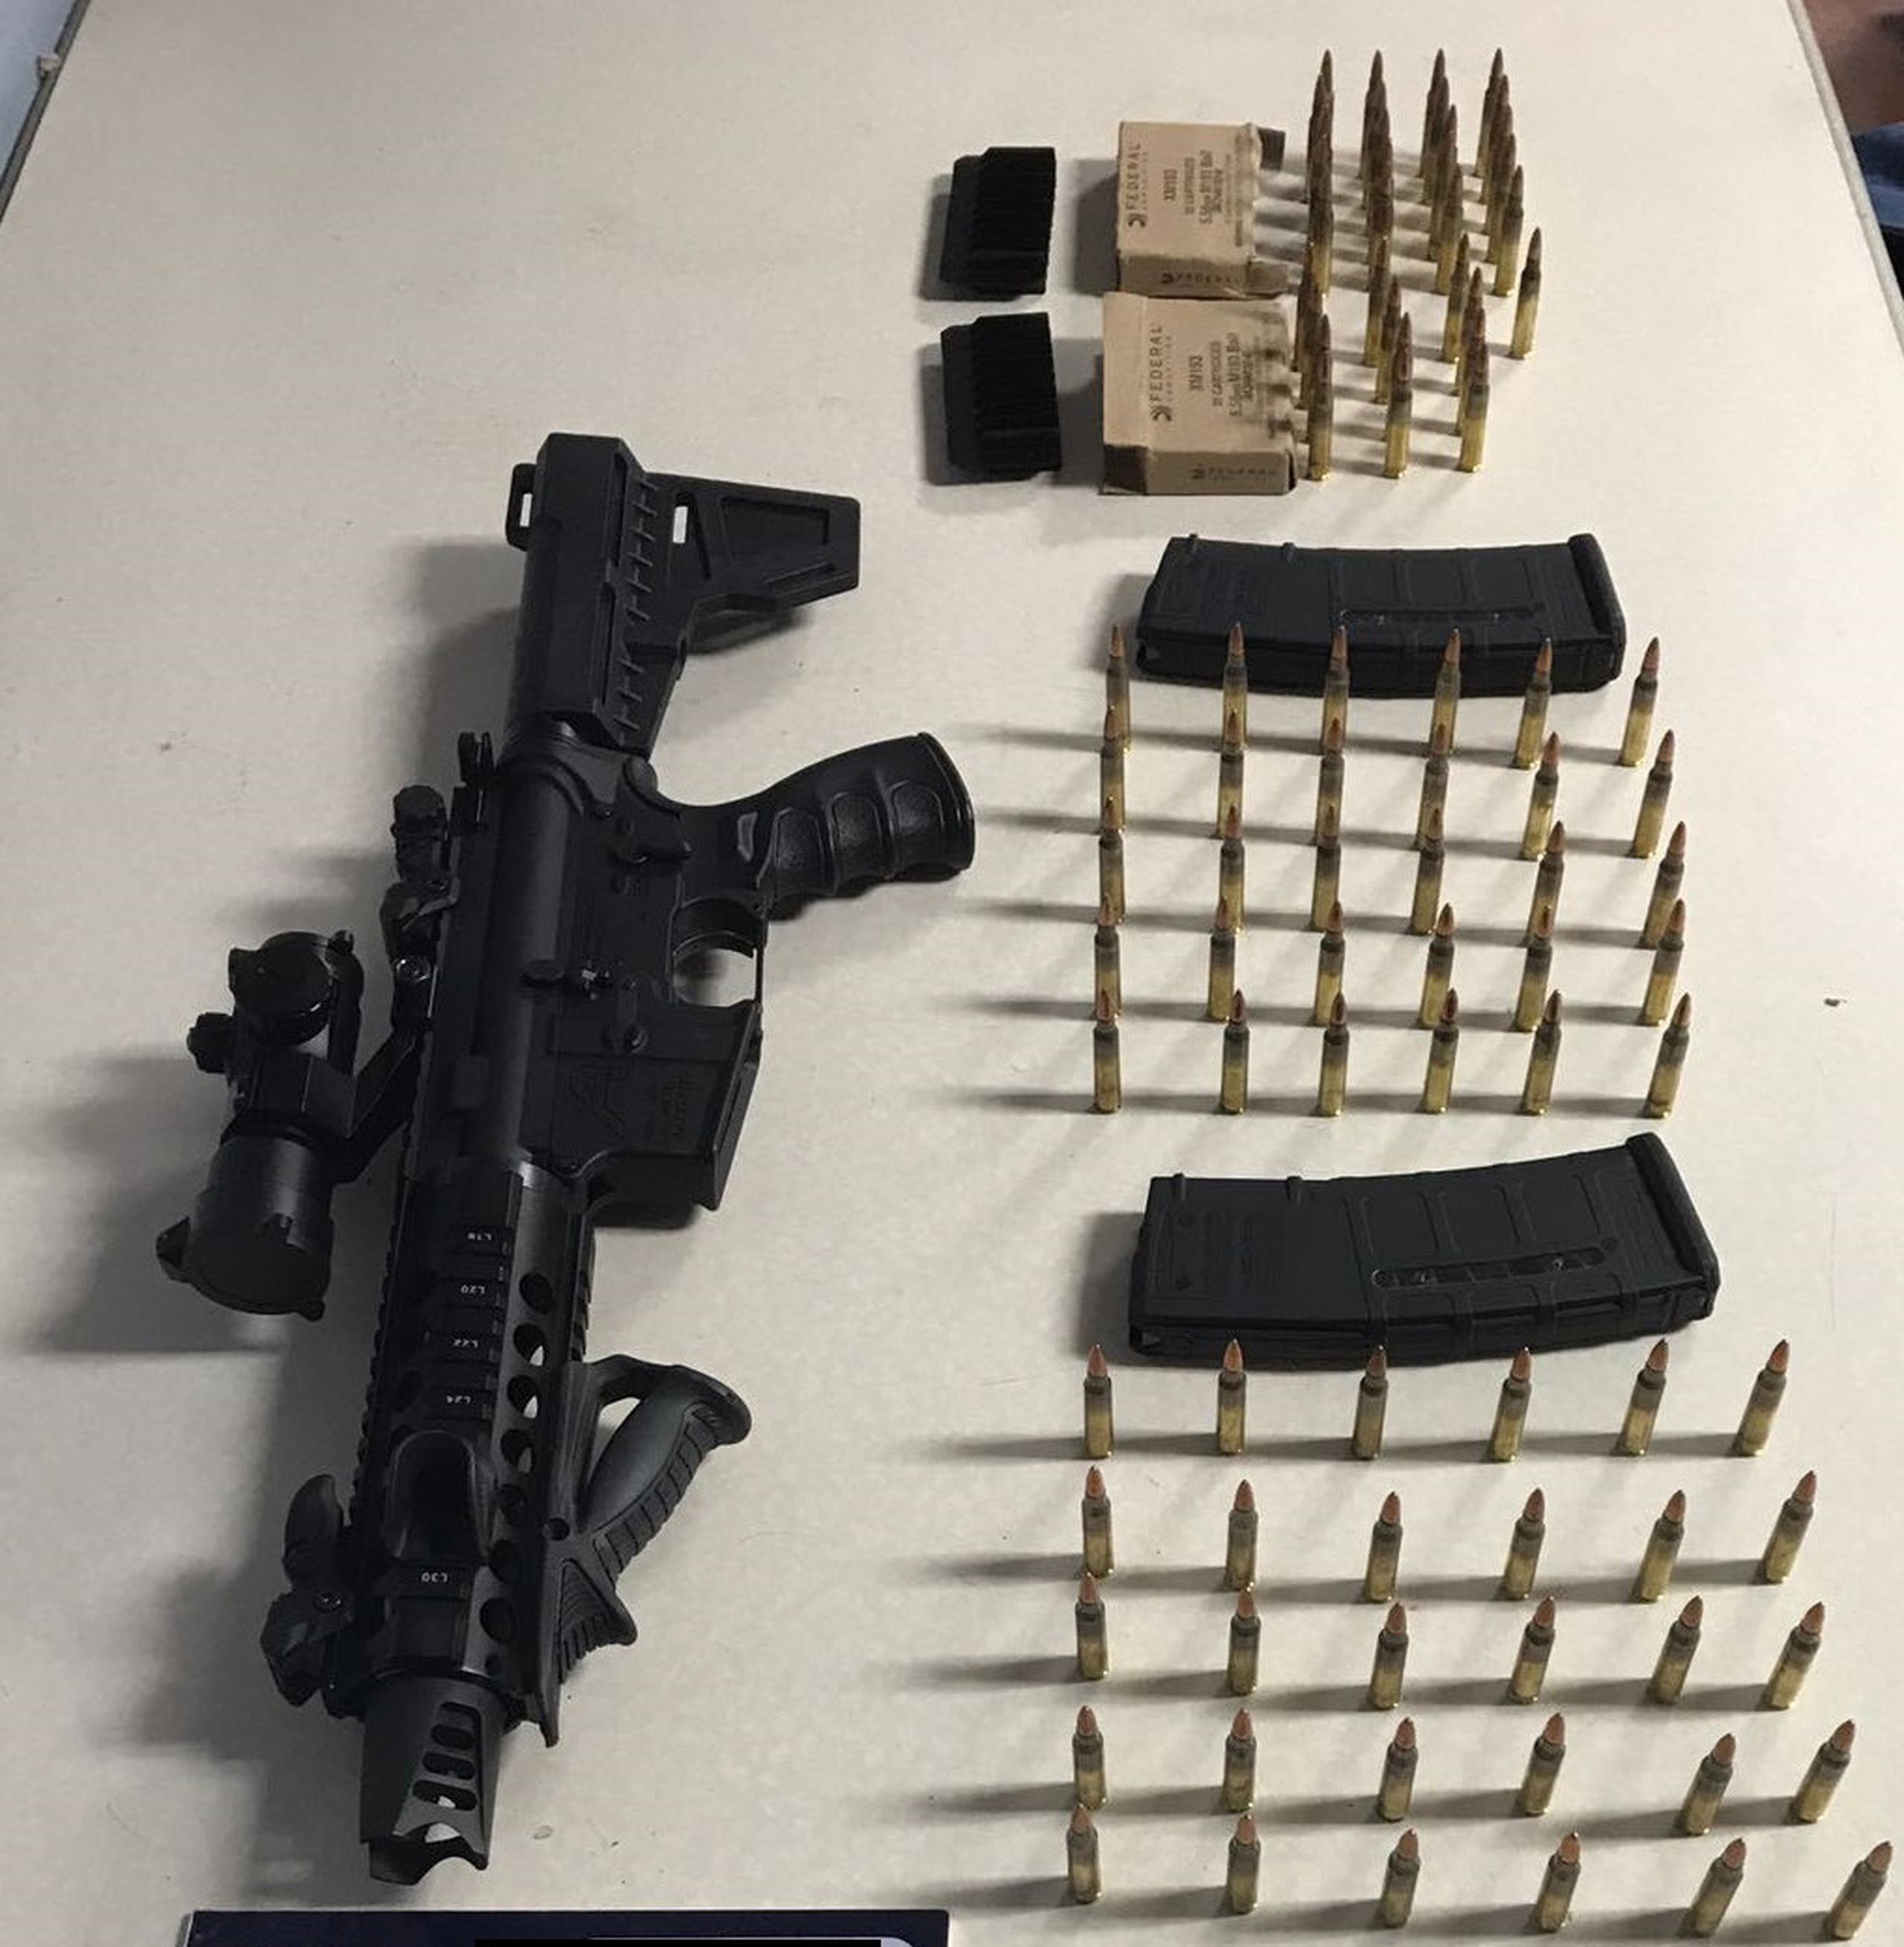 Al individuo arrestado en Fajardo se le ocupó un rifle modelo Aero AR15 pistol. (Suministrada)